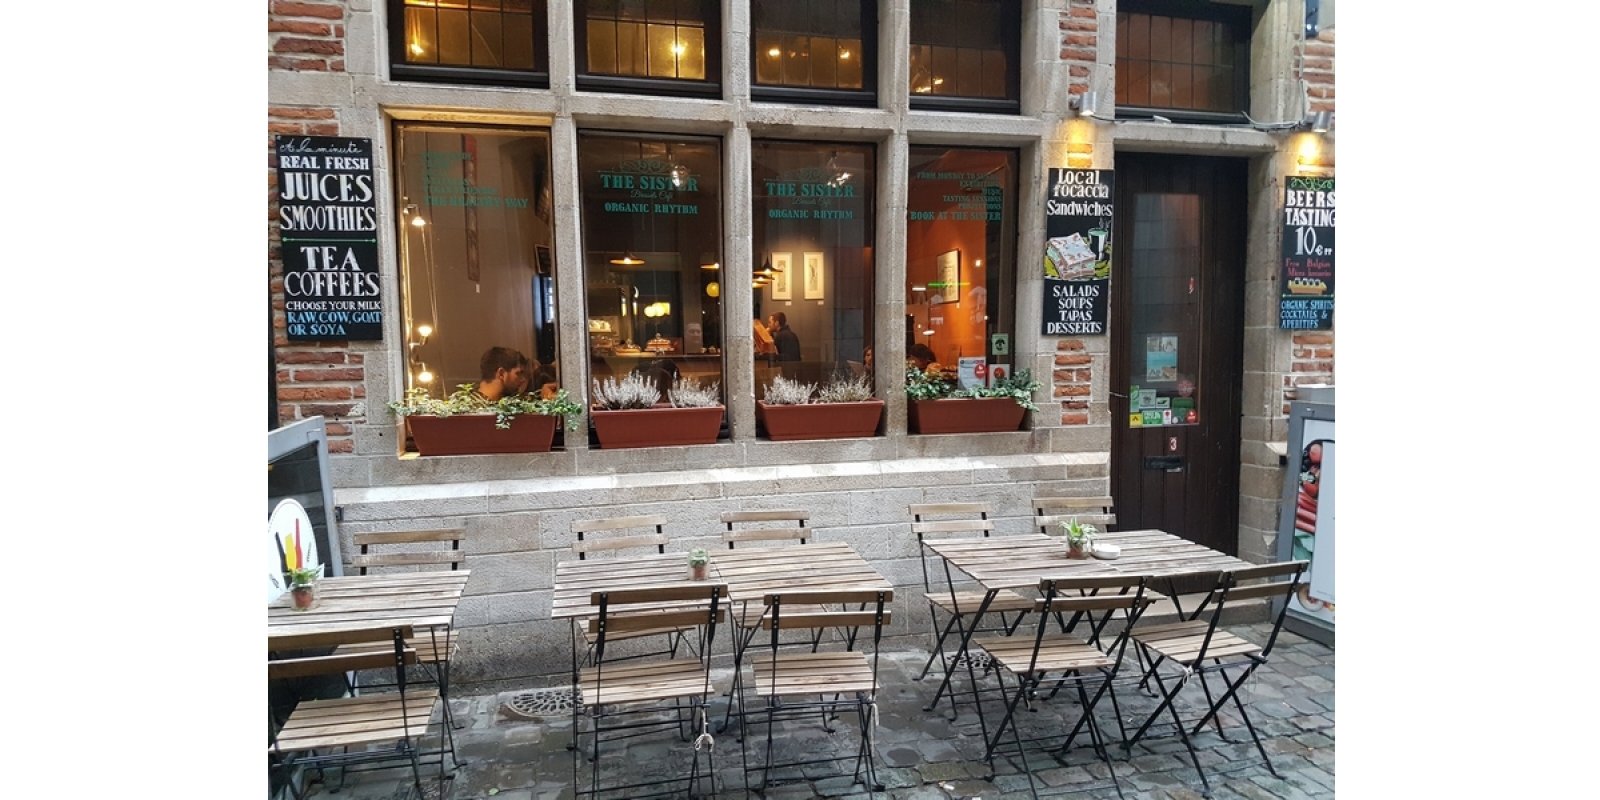 Manger vegan à Bruxelles pendant un week-end